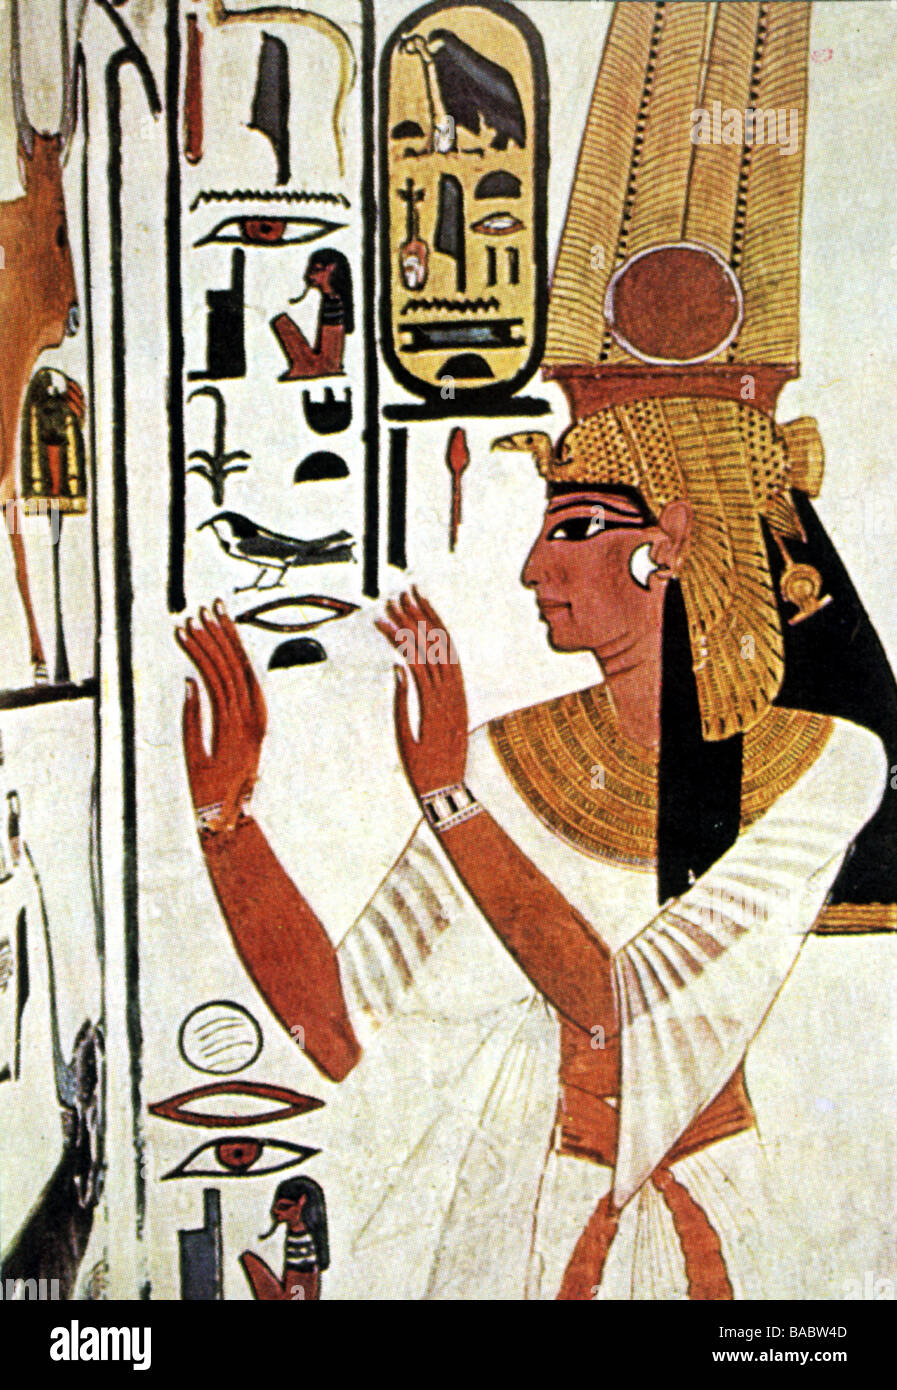 Ramesses Ii Le Grand Pharaon D Egypte 1279 1213 Av J C 19eme Dynastie Sa Femme Nefertari Vers 1290 Vers 1255 Av J C Peinture Murale De Sa Tombe Vallee Des Reines Thebes